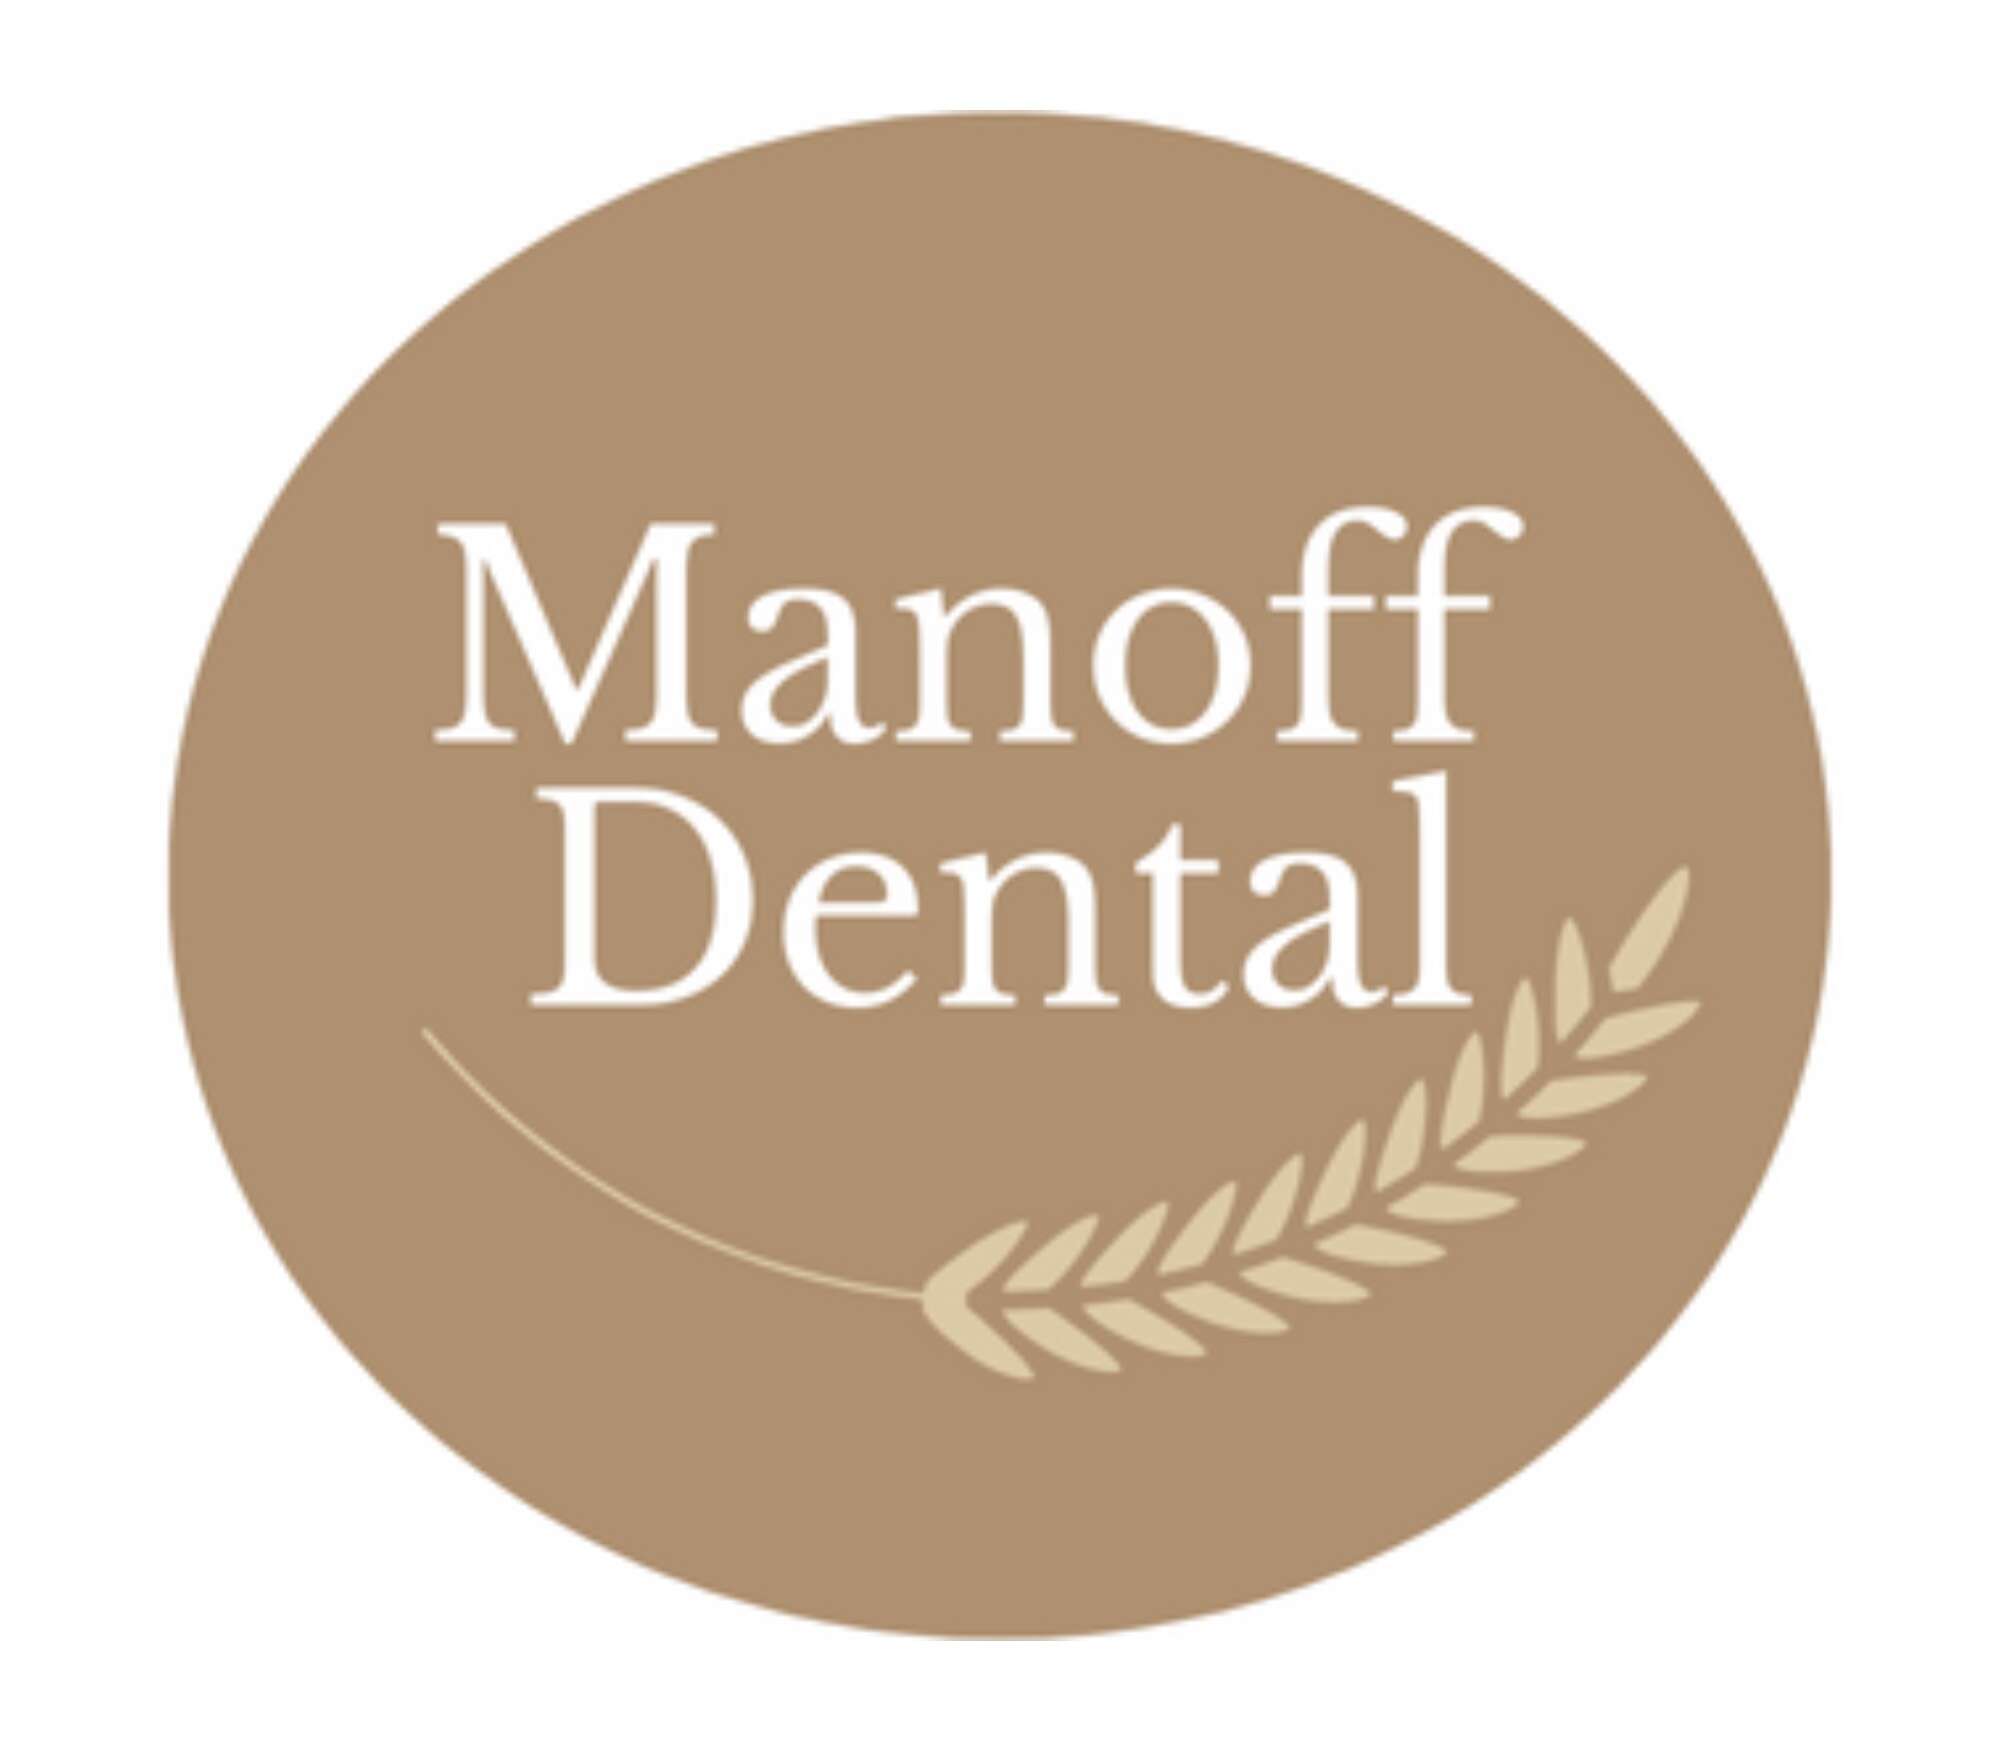 Manoff Dental